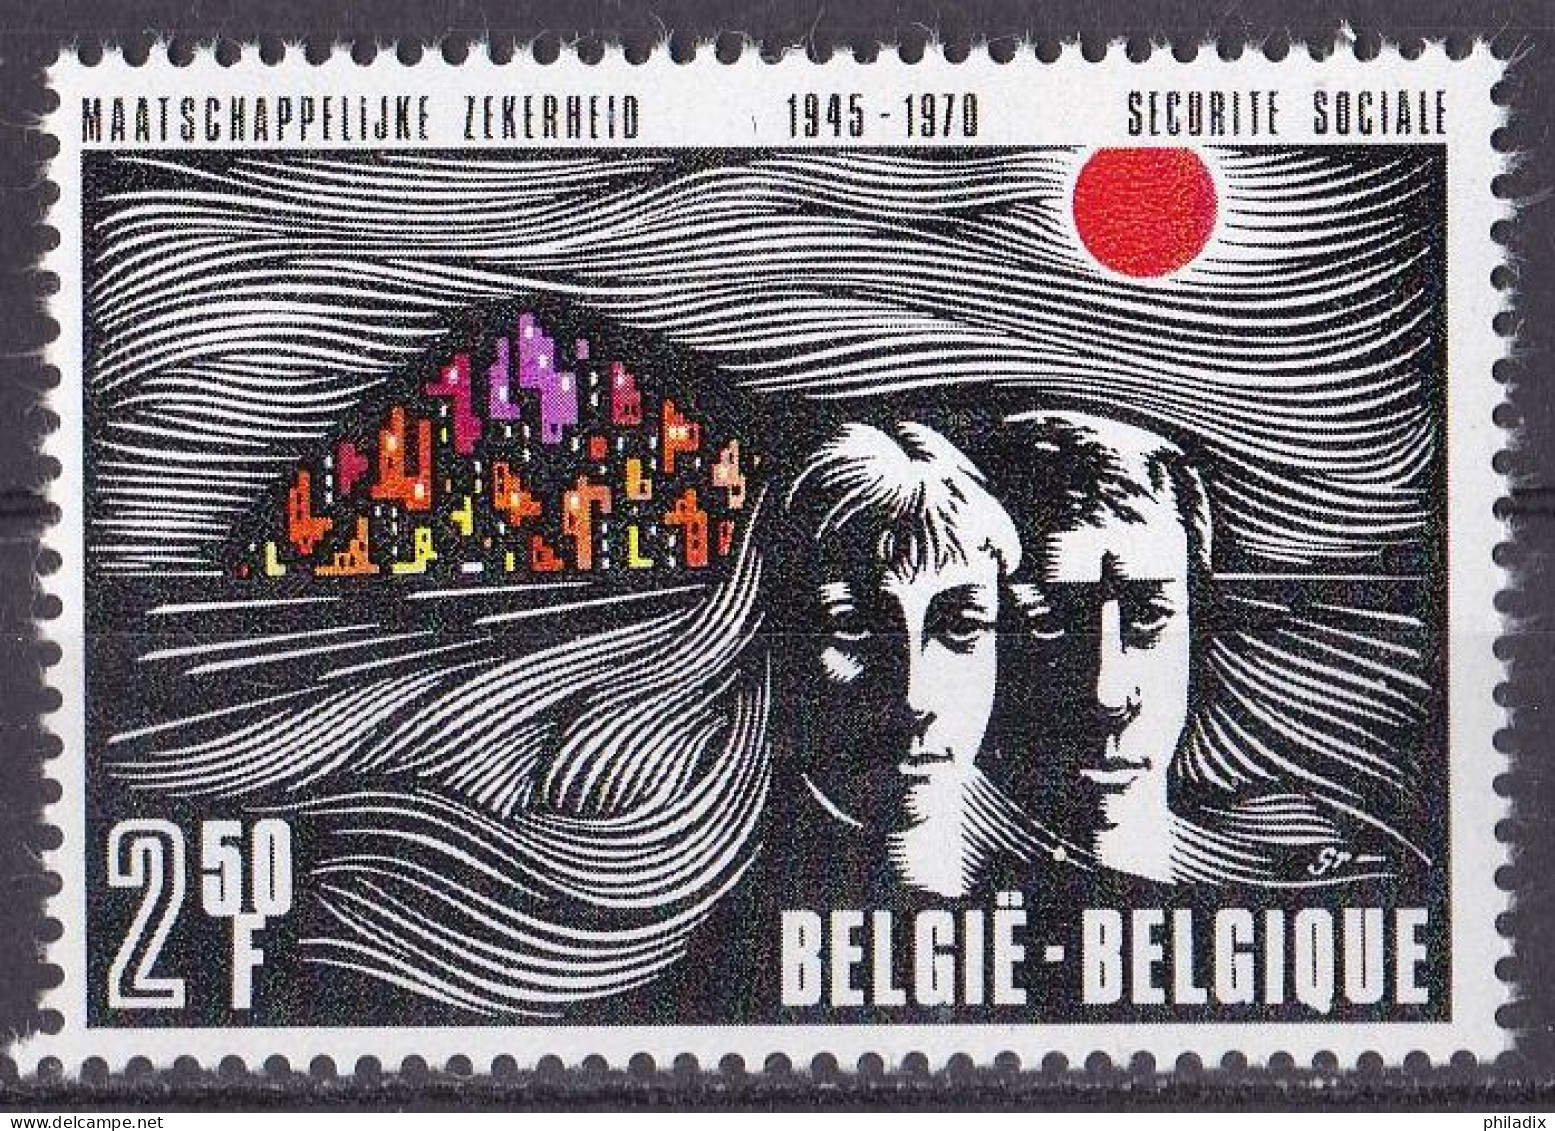 Belgien Marke Von 1970 **/MNH (A5-12) - Nuovi